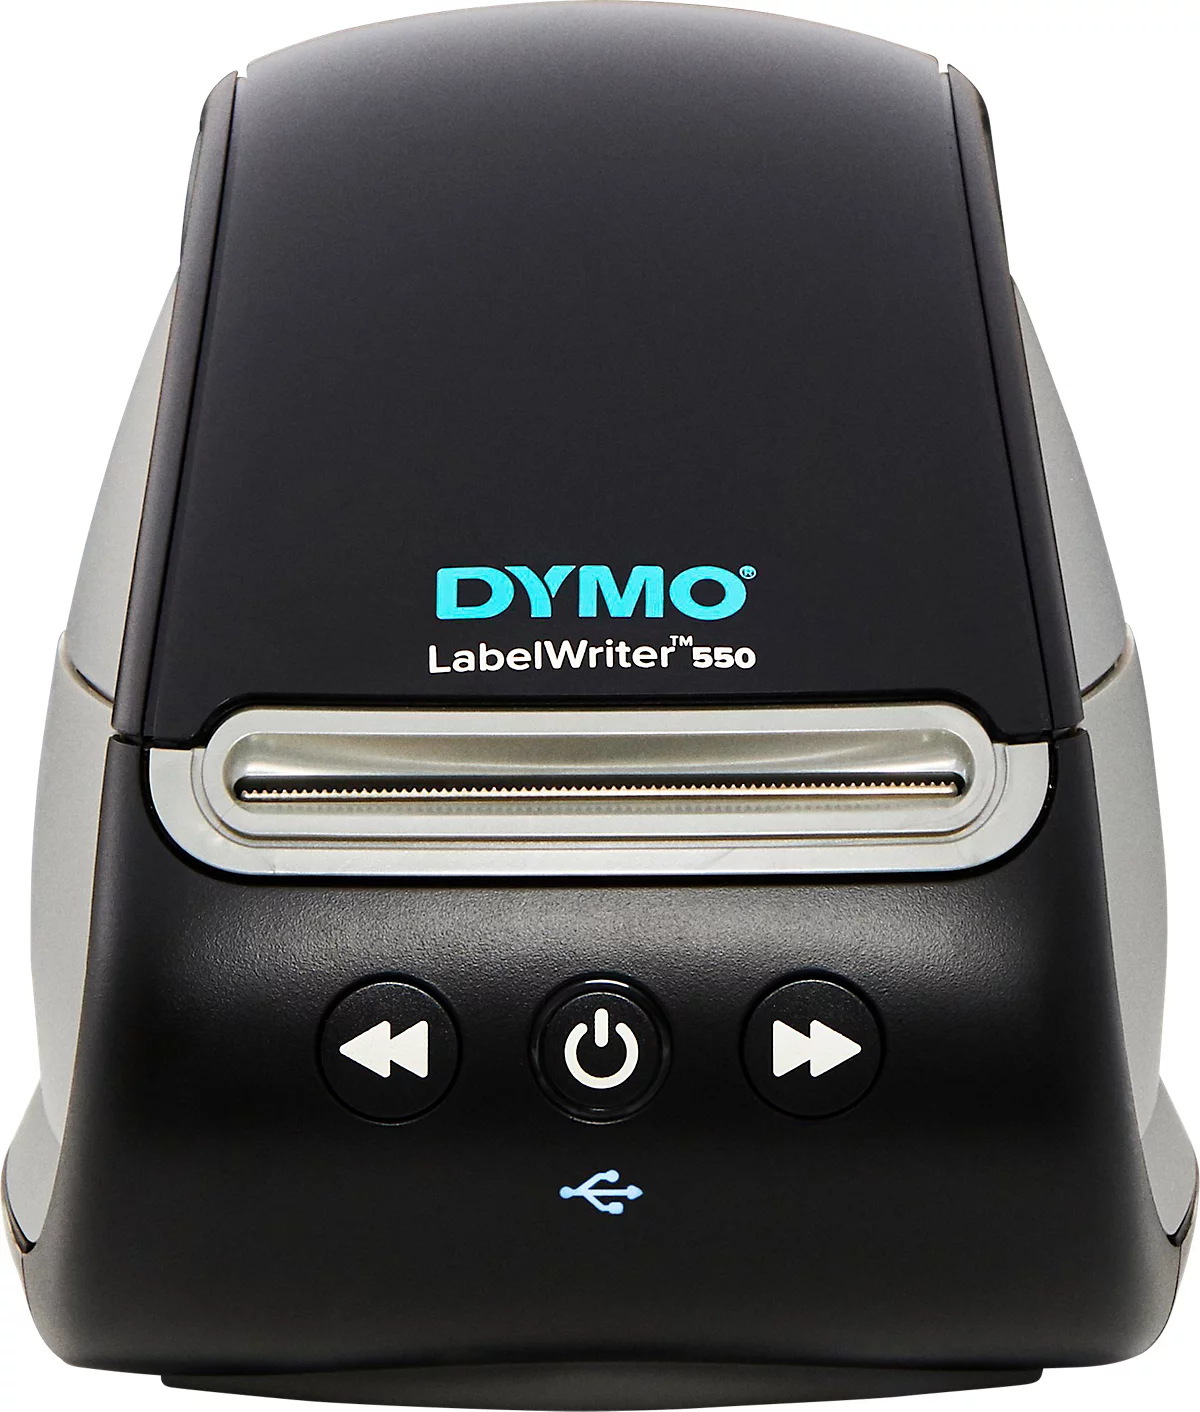 Impresora de etiquetas DYMO® LabelWriter™ 550, impresión térmica directa, 300 x 300 ppp, 62 etiquetas/min, función de detección automática, USB, etiquetas incluidas.